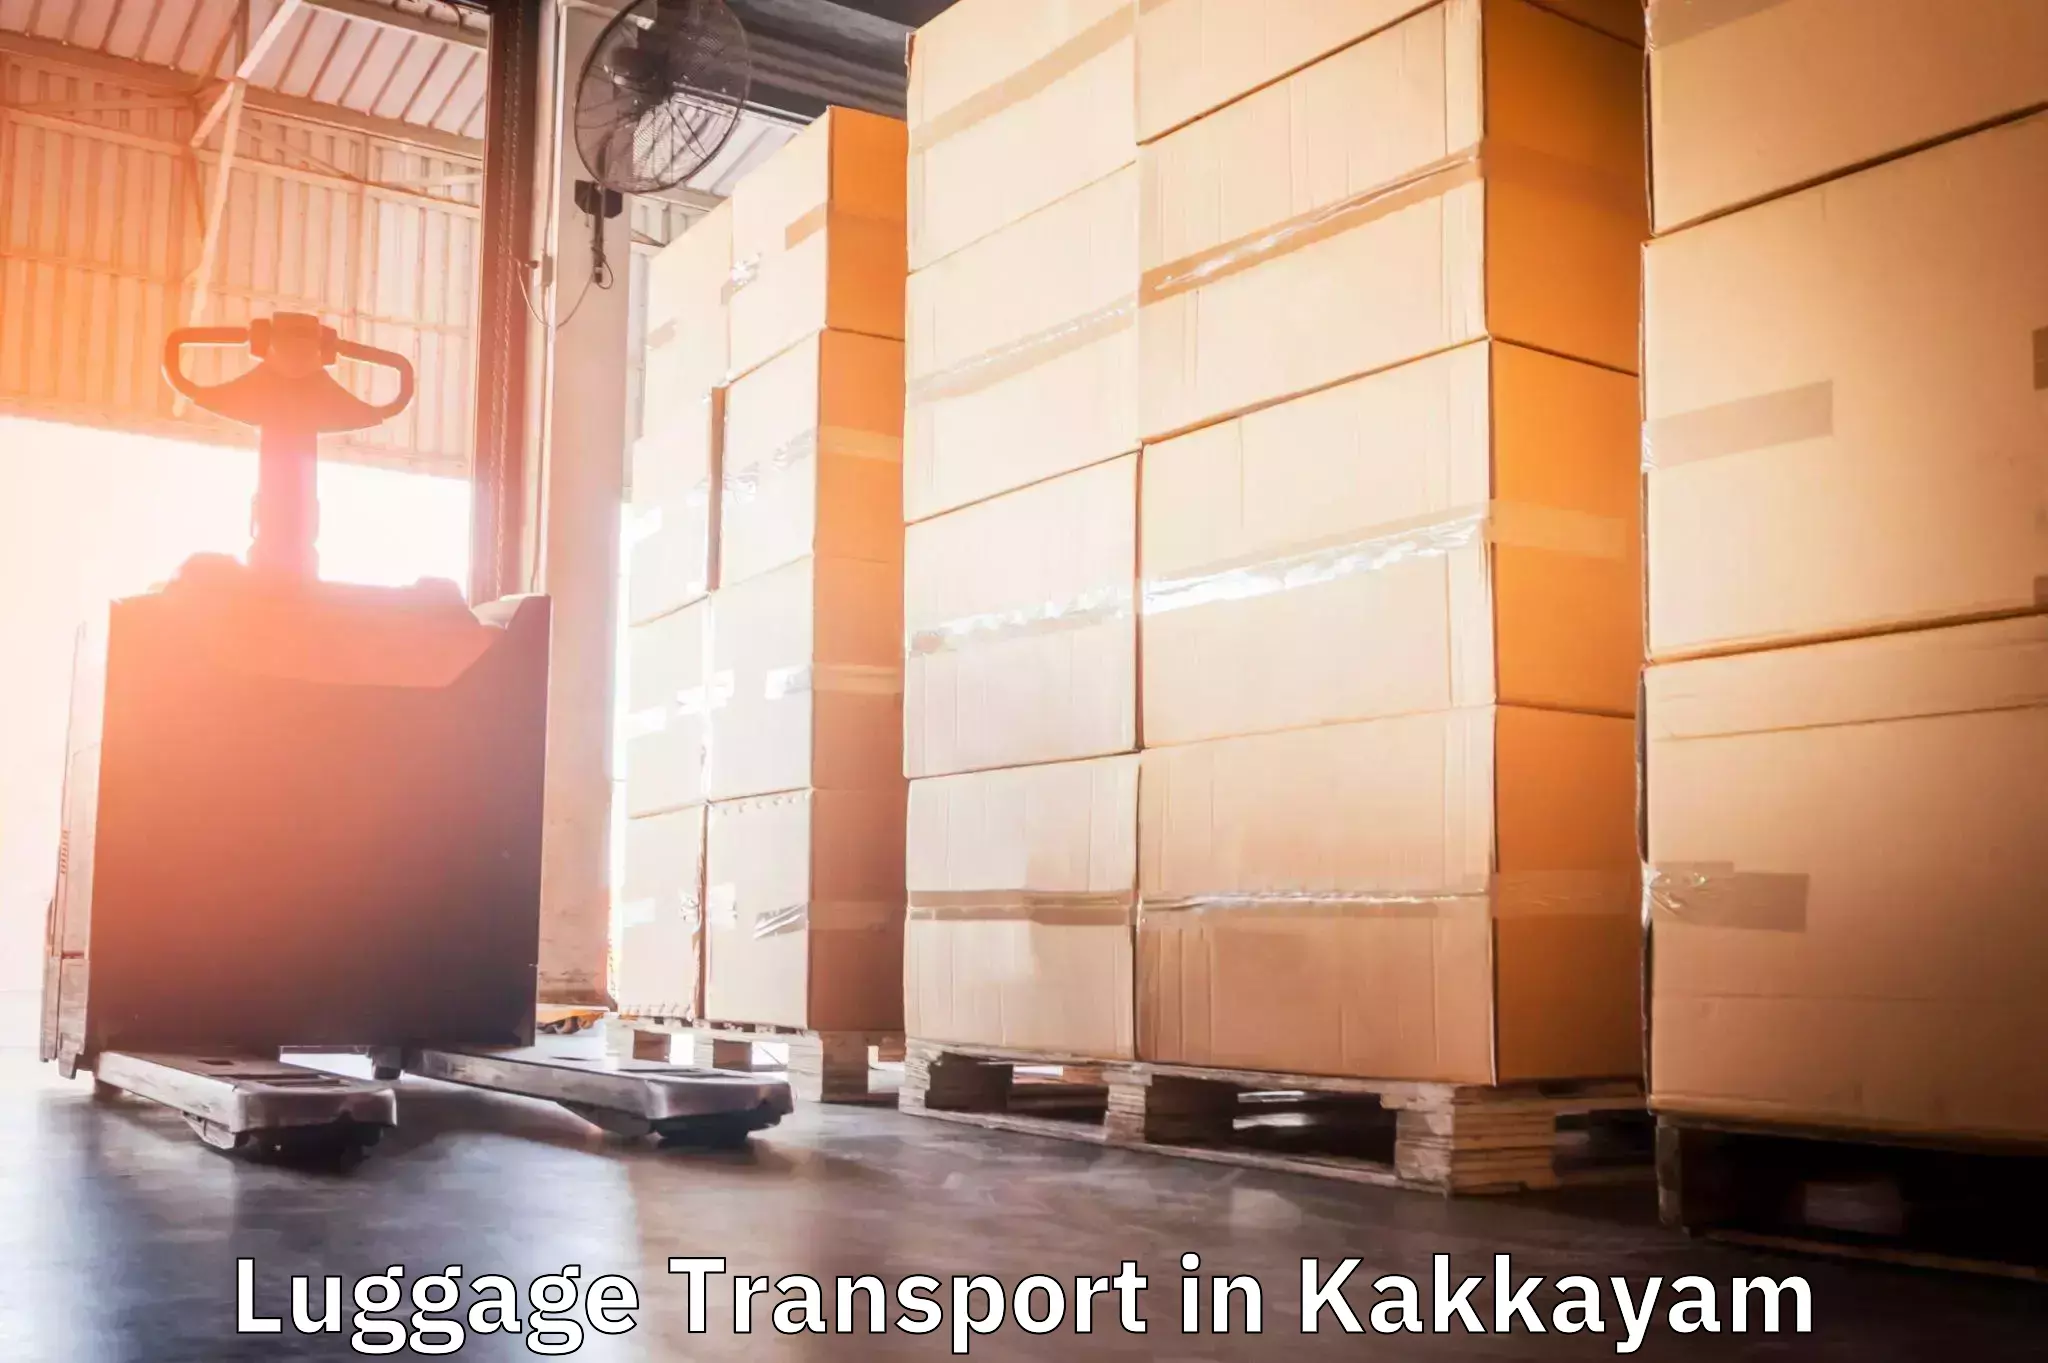 Luggage shipping planner in Kakkayam